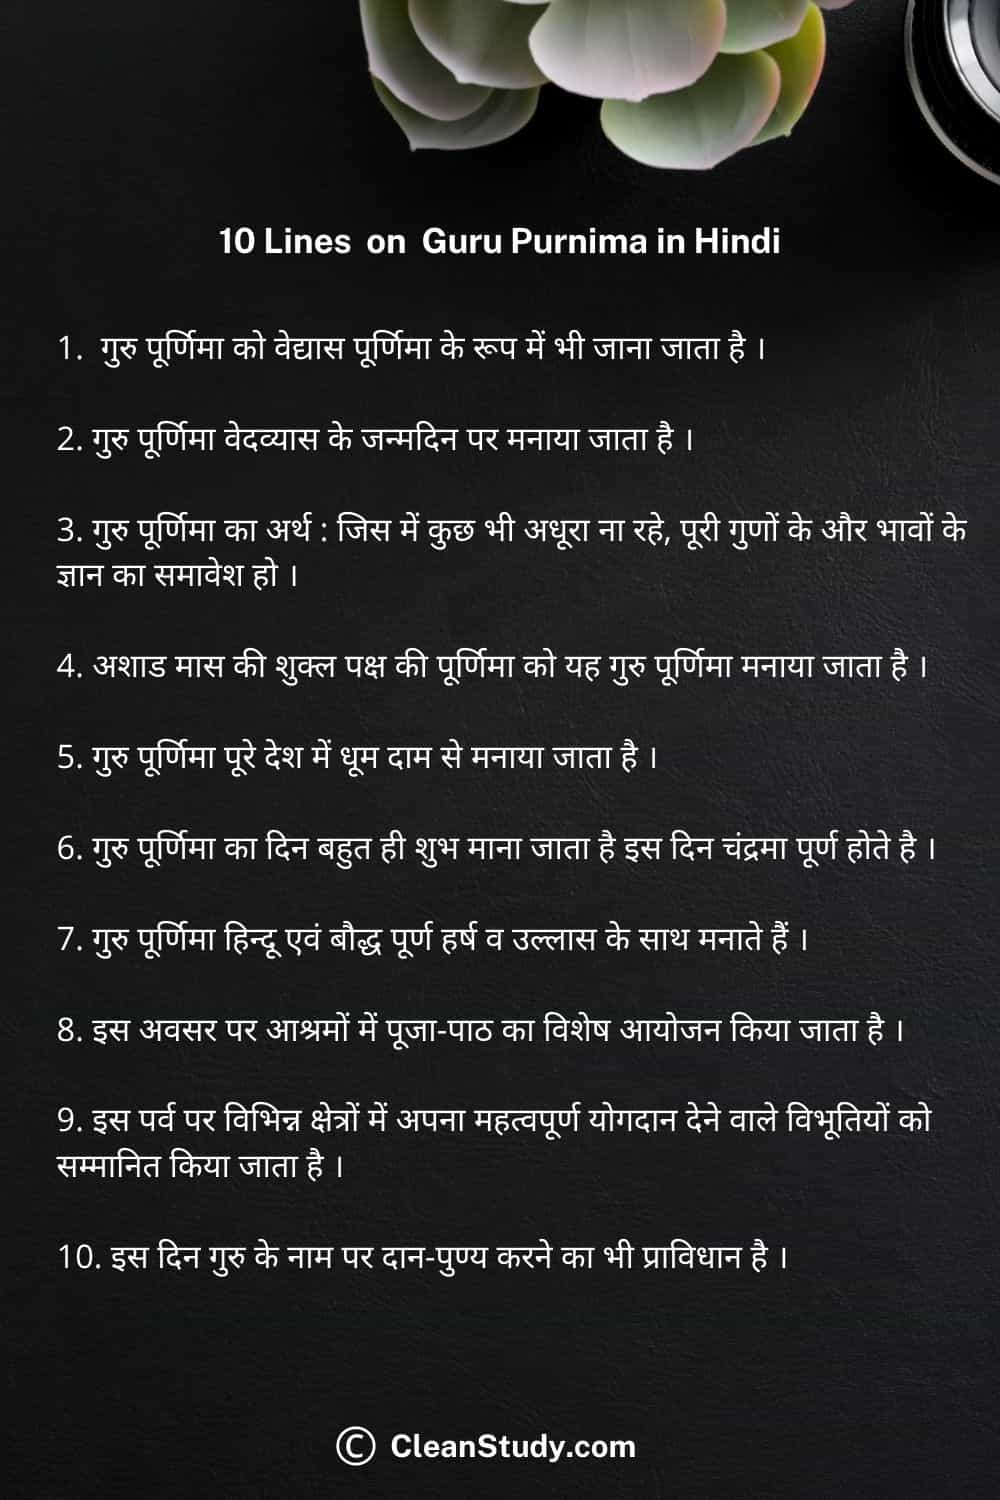 10 lines on guru purnima in hindi